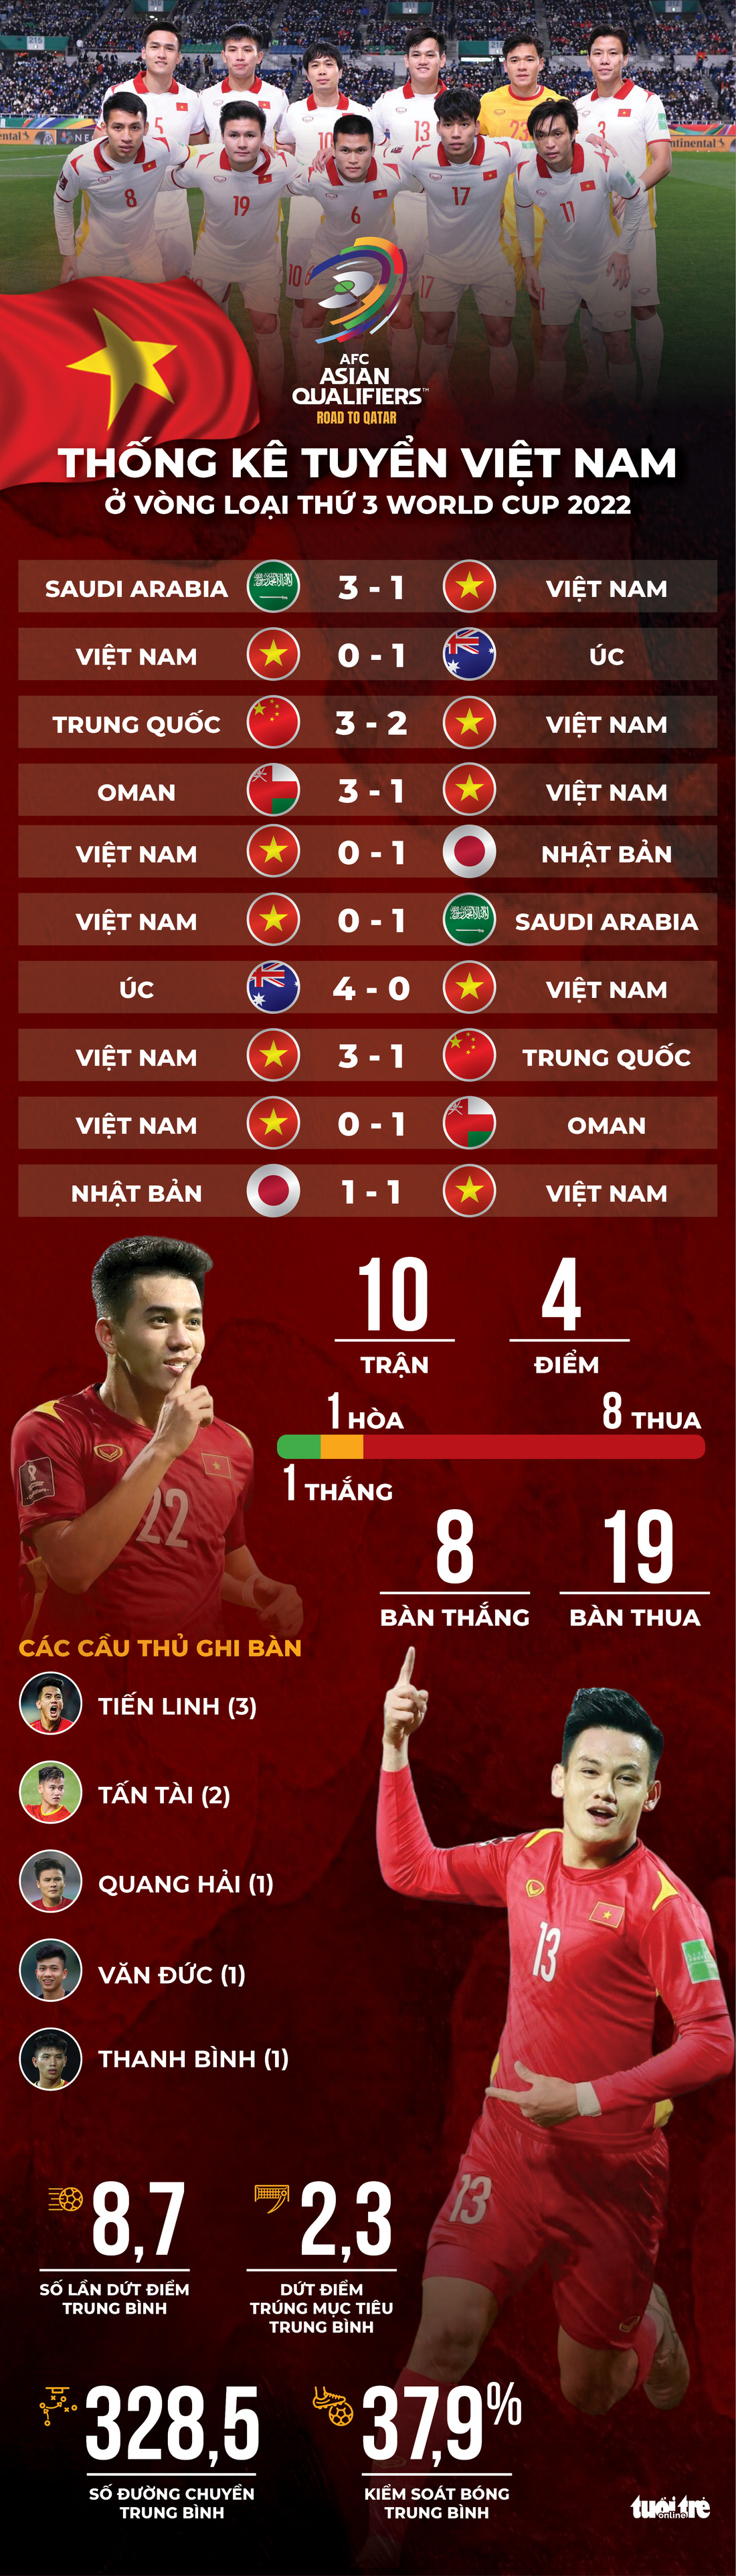 Vòng loại cuối cùng World Cup 2022 của tuyển Việt Nam qua các con số - Ảnh 1.